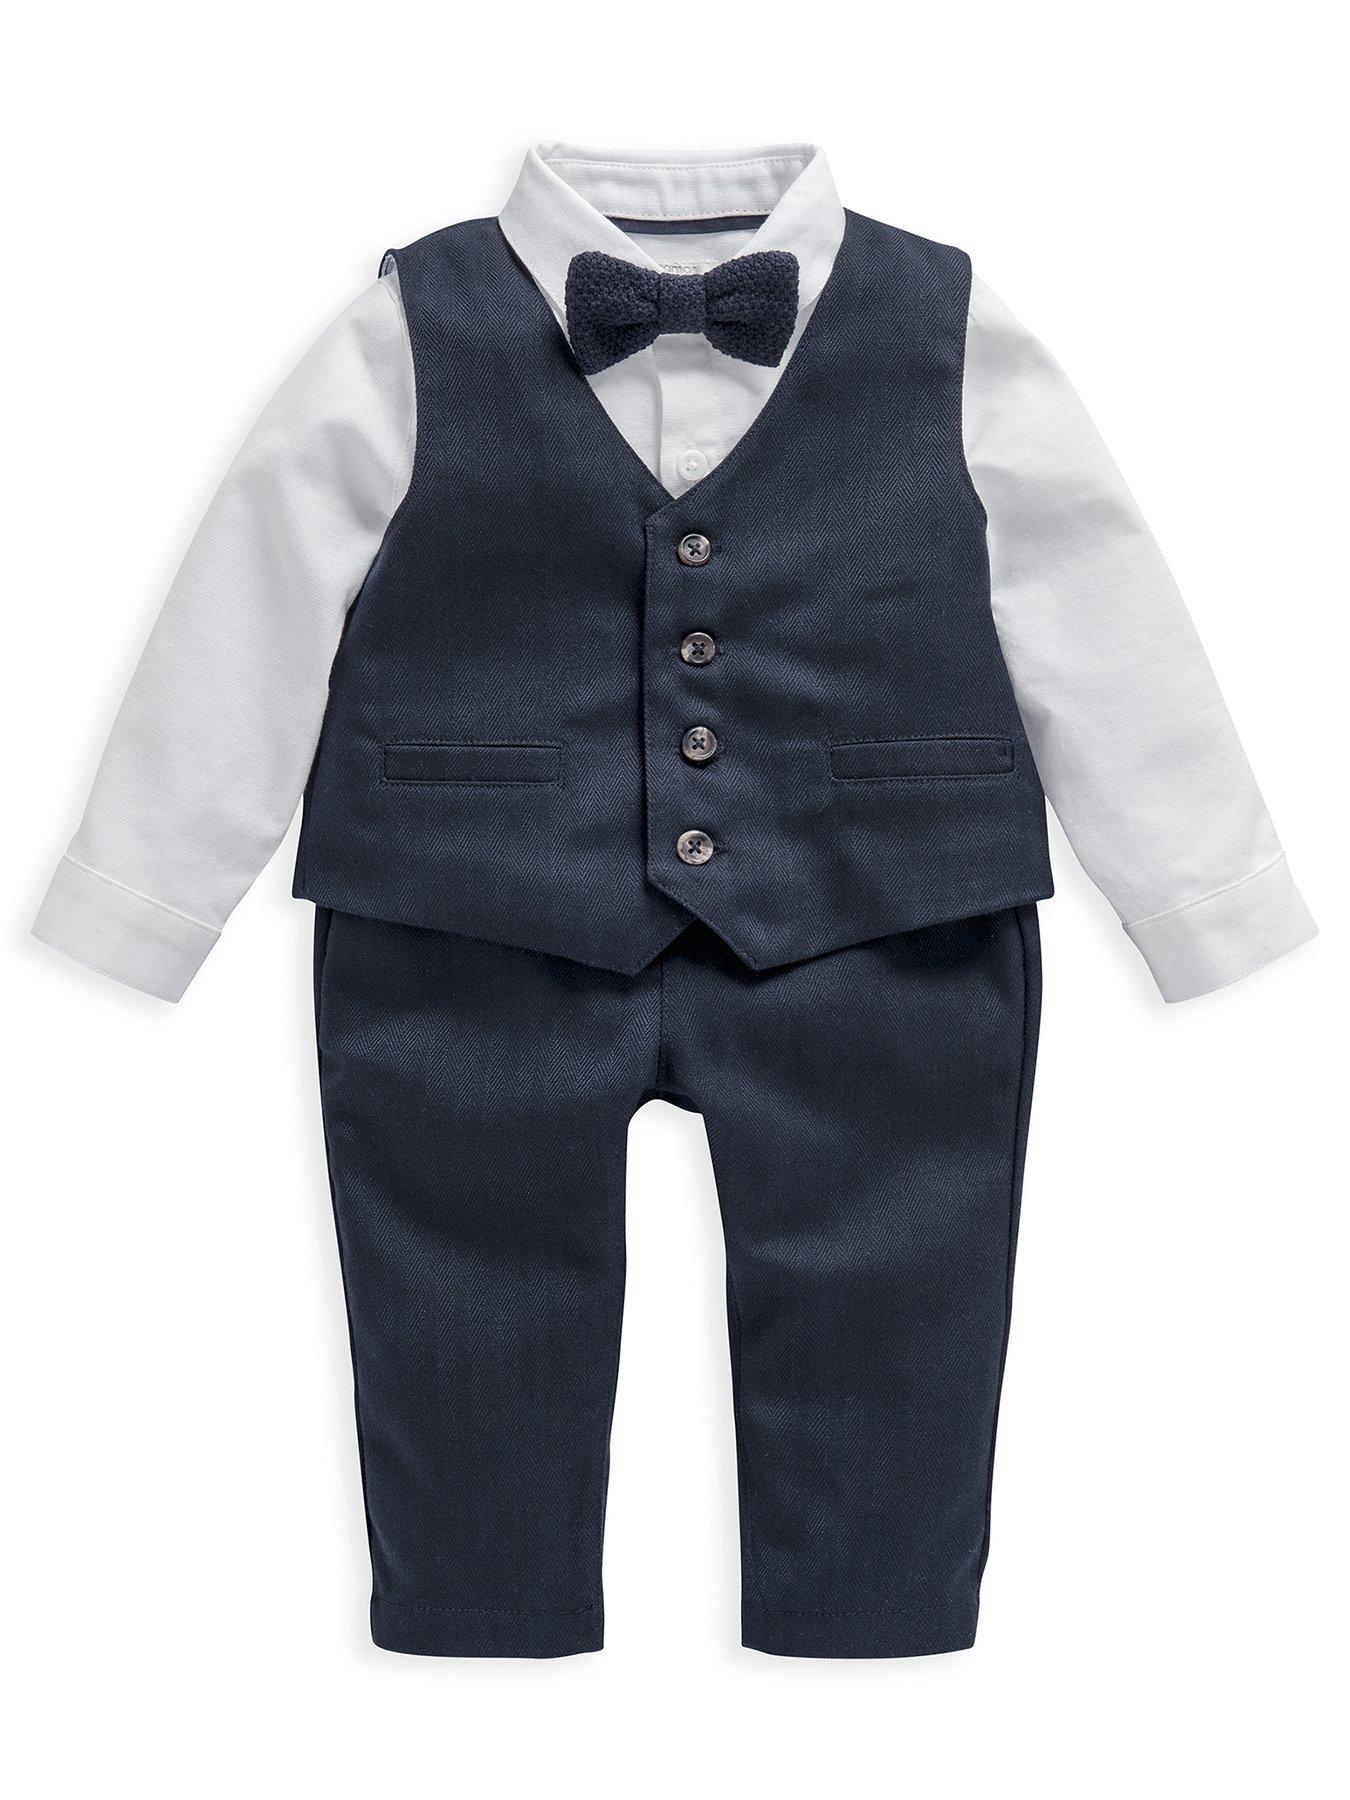 Kids Baby Boys 4 Piece Suit Set - Blue